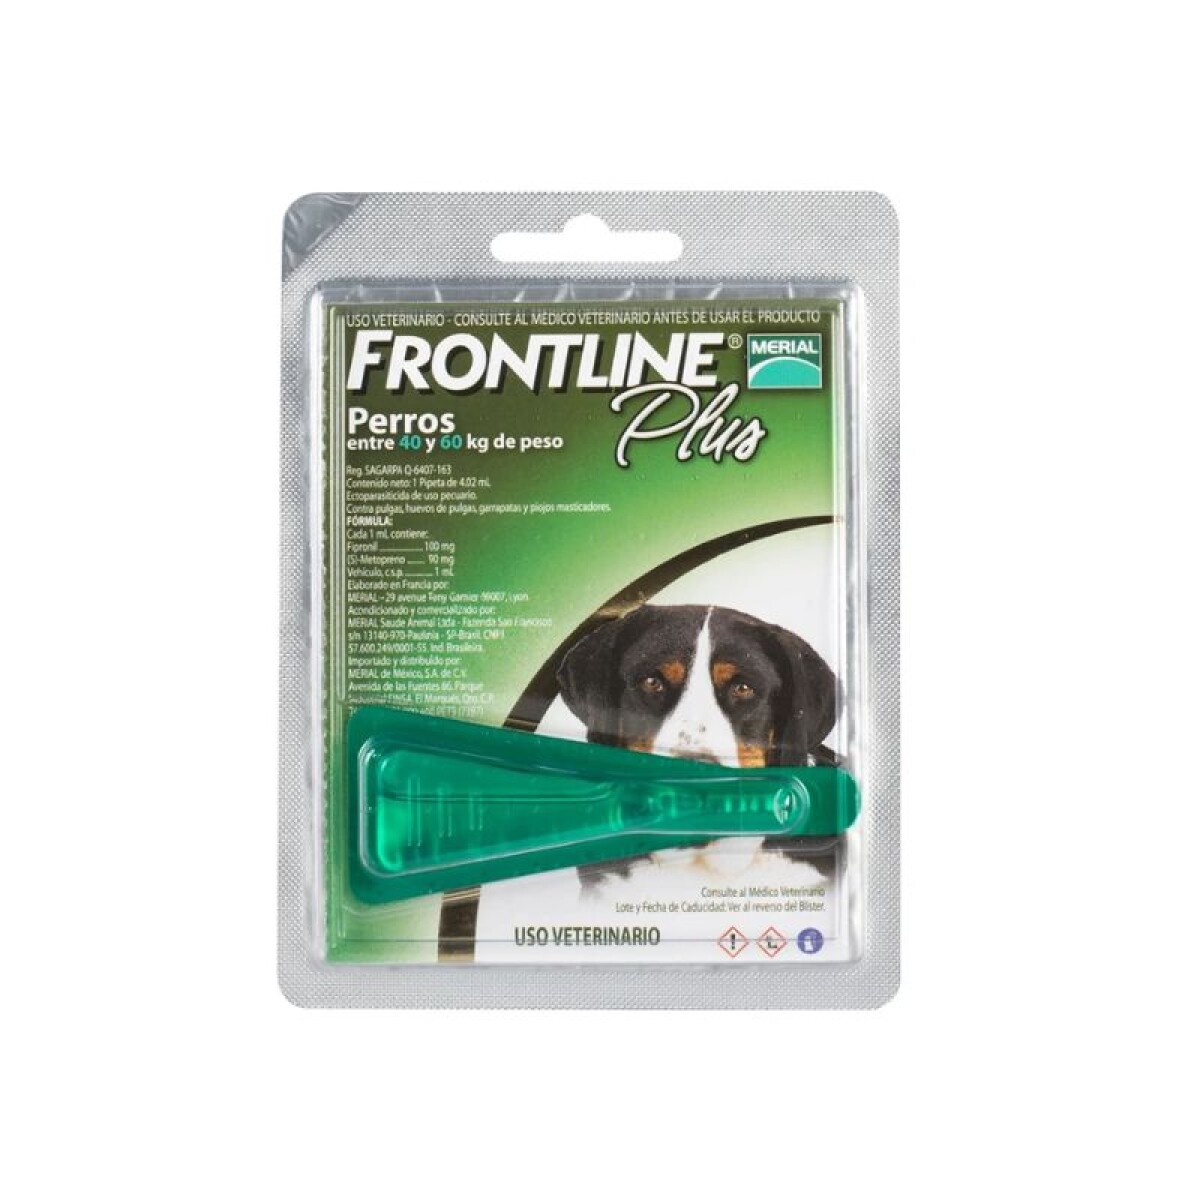 FRONTLINE PLUS PERROS 40-60 KG - Frontline Plus Perros 40-60 Kg 